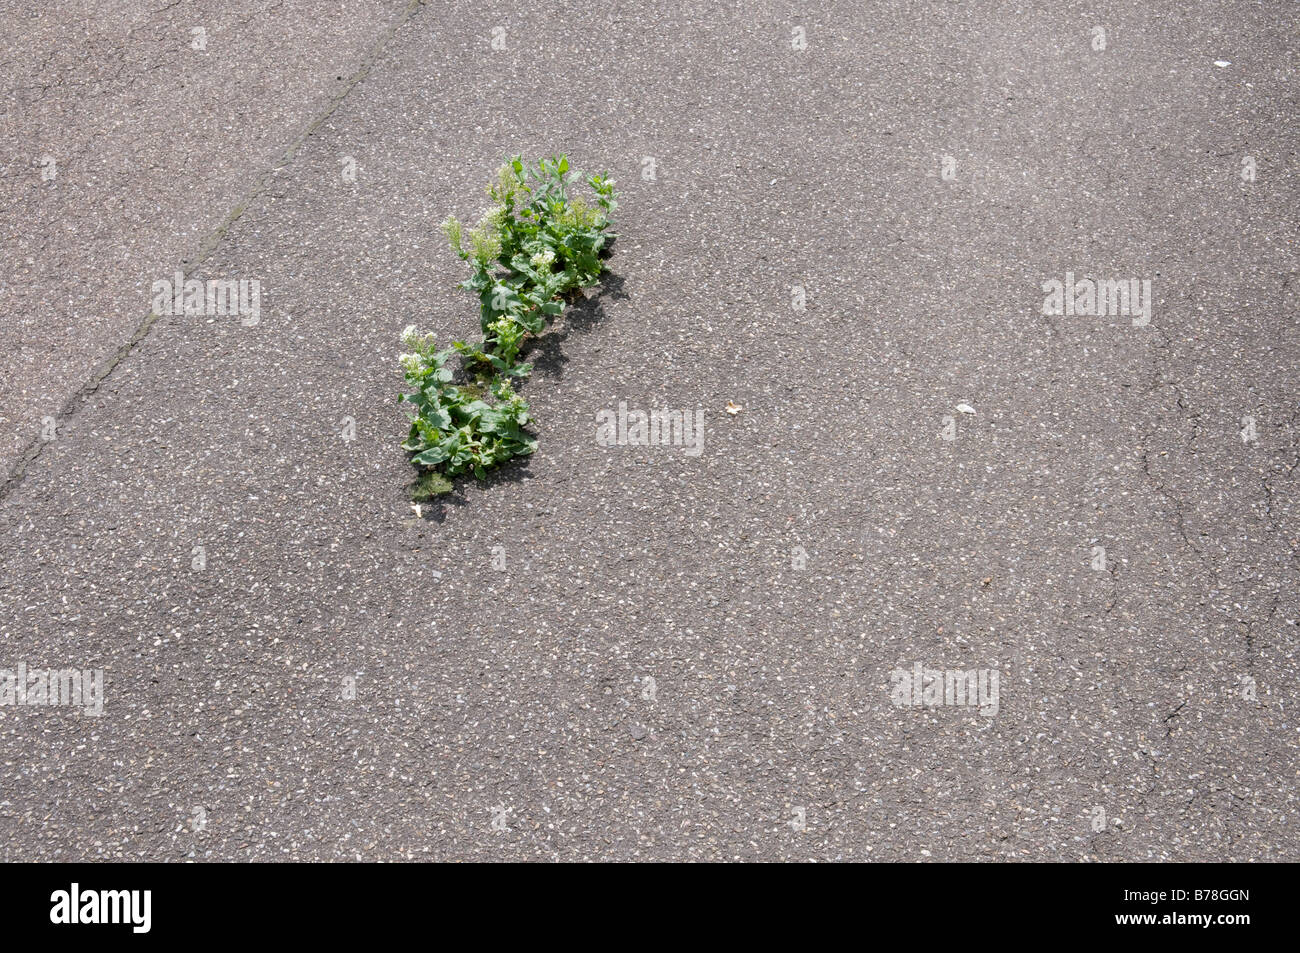 Pianta che cresce su asfalto, vista in elevazione Foto Stock